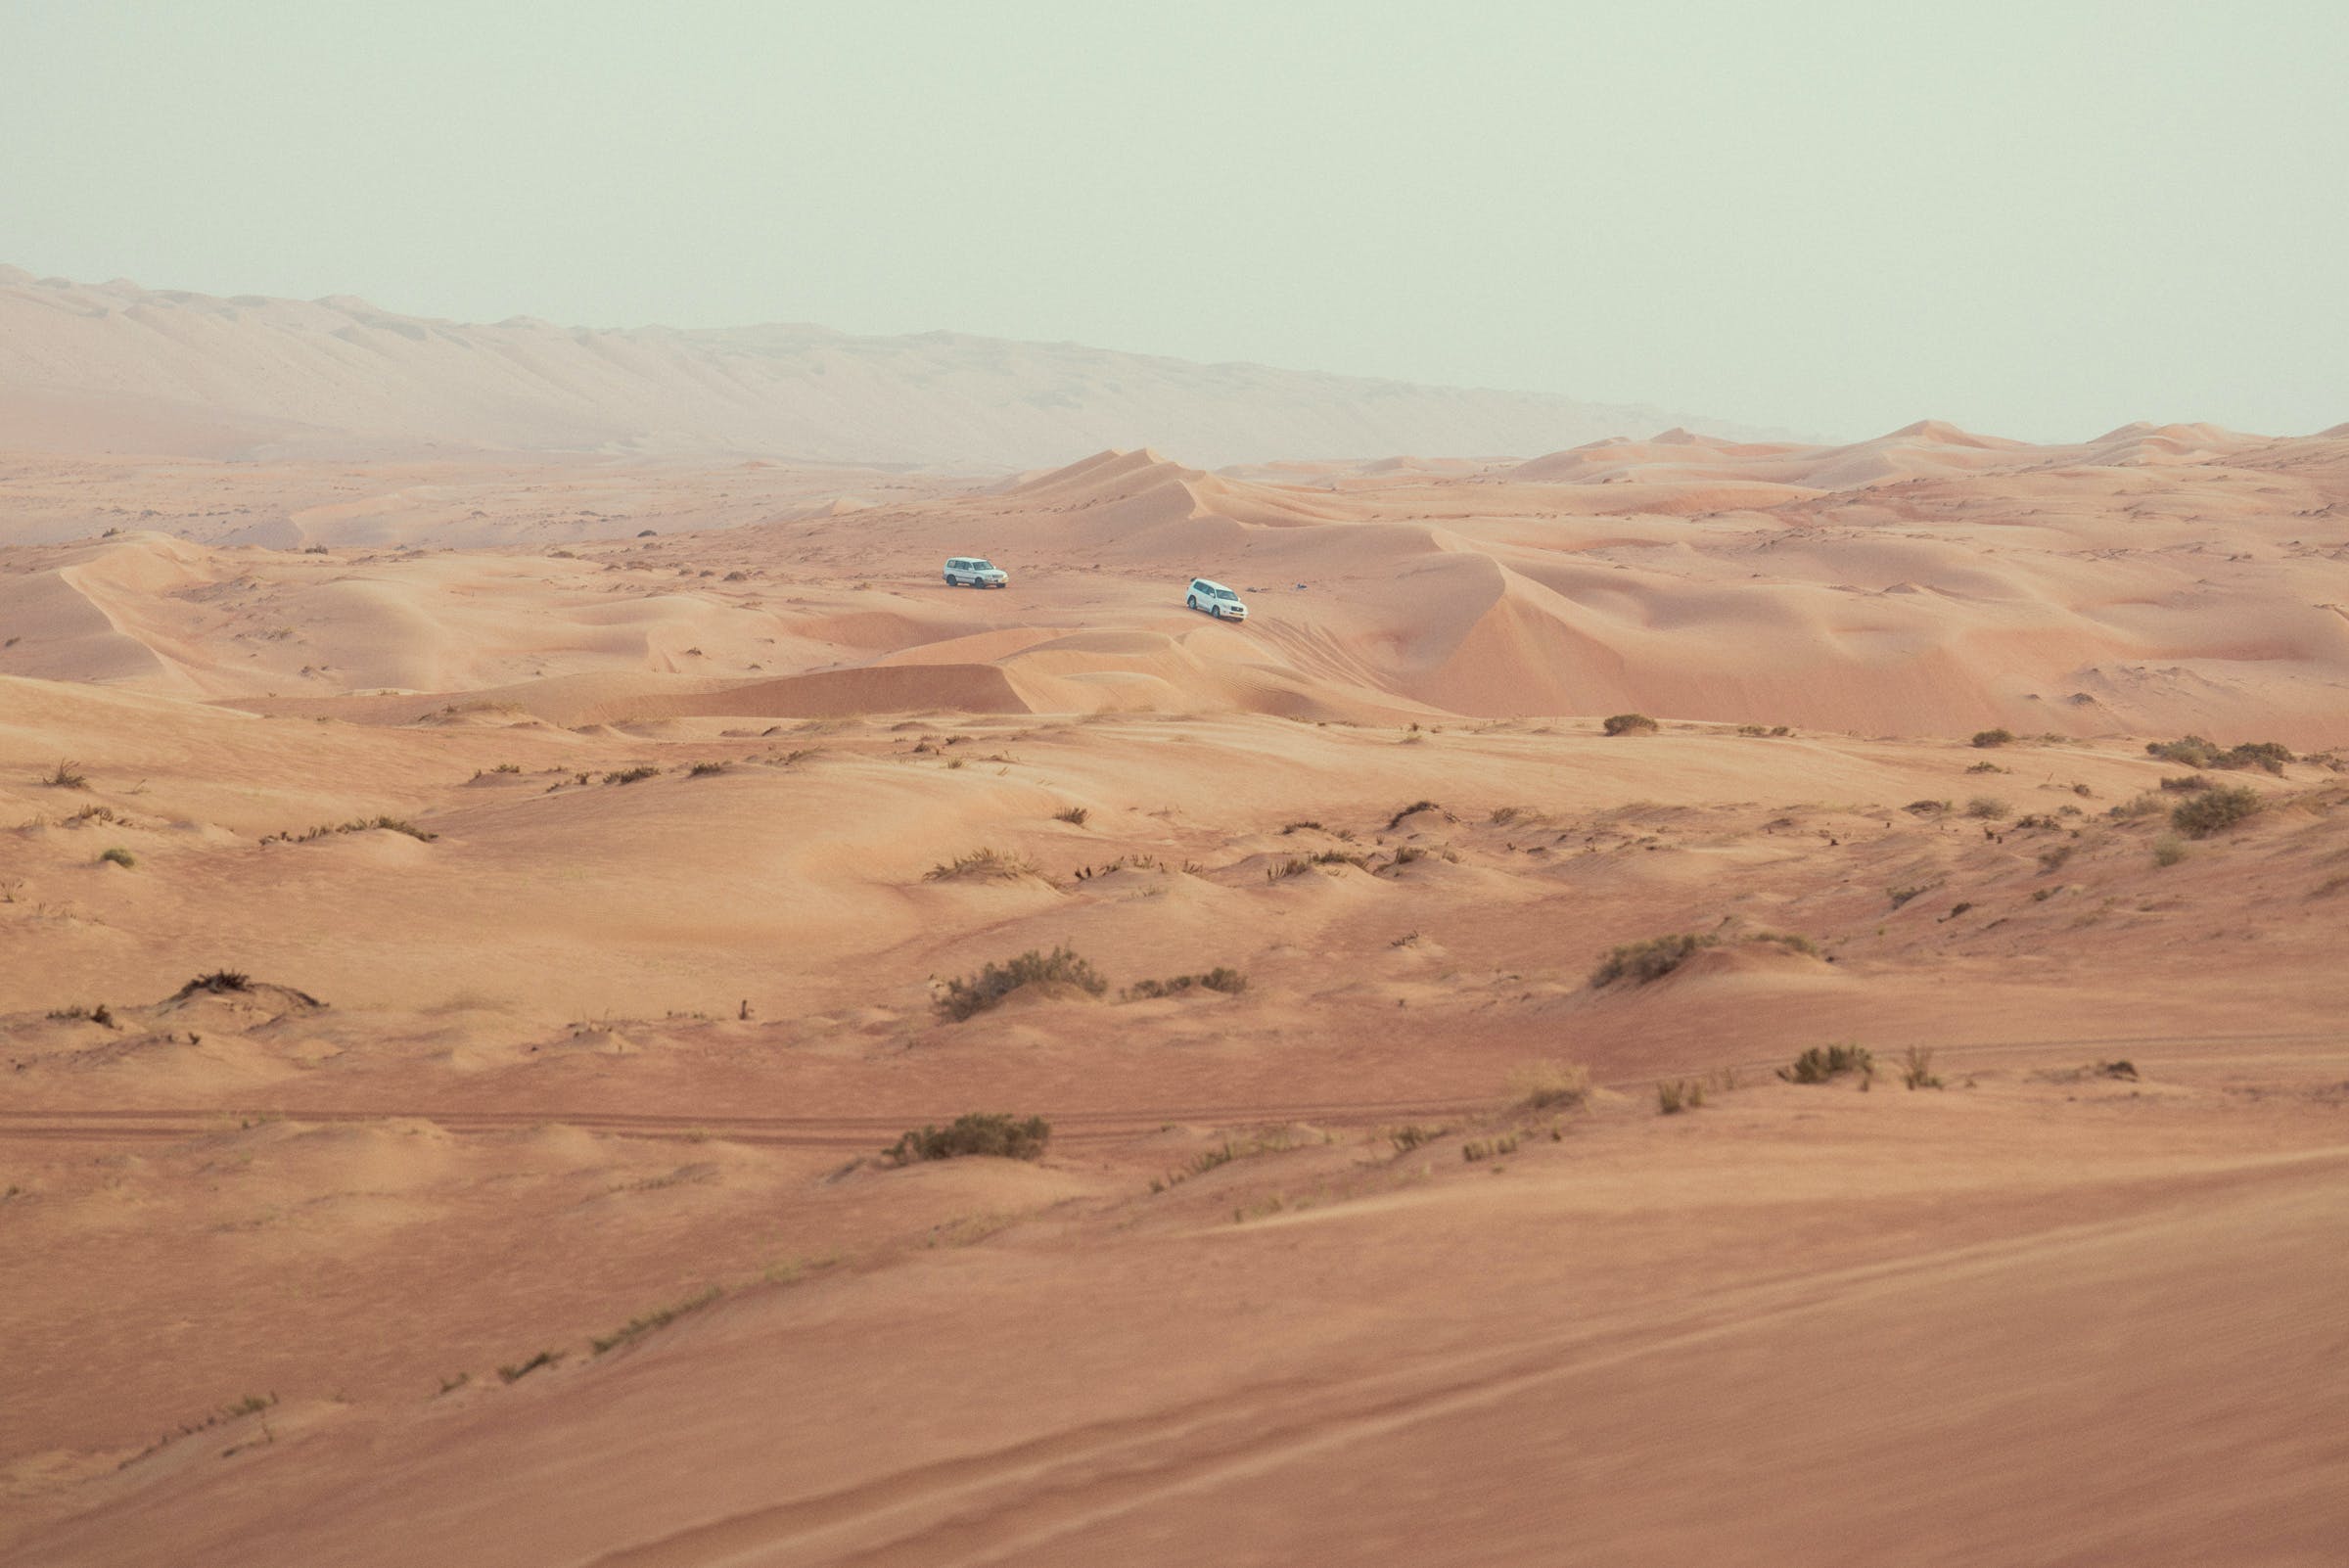 In esplorazione sulle dune...